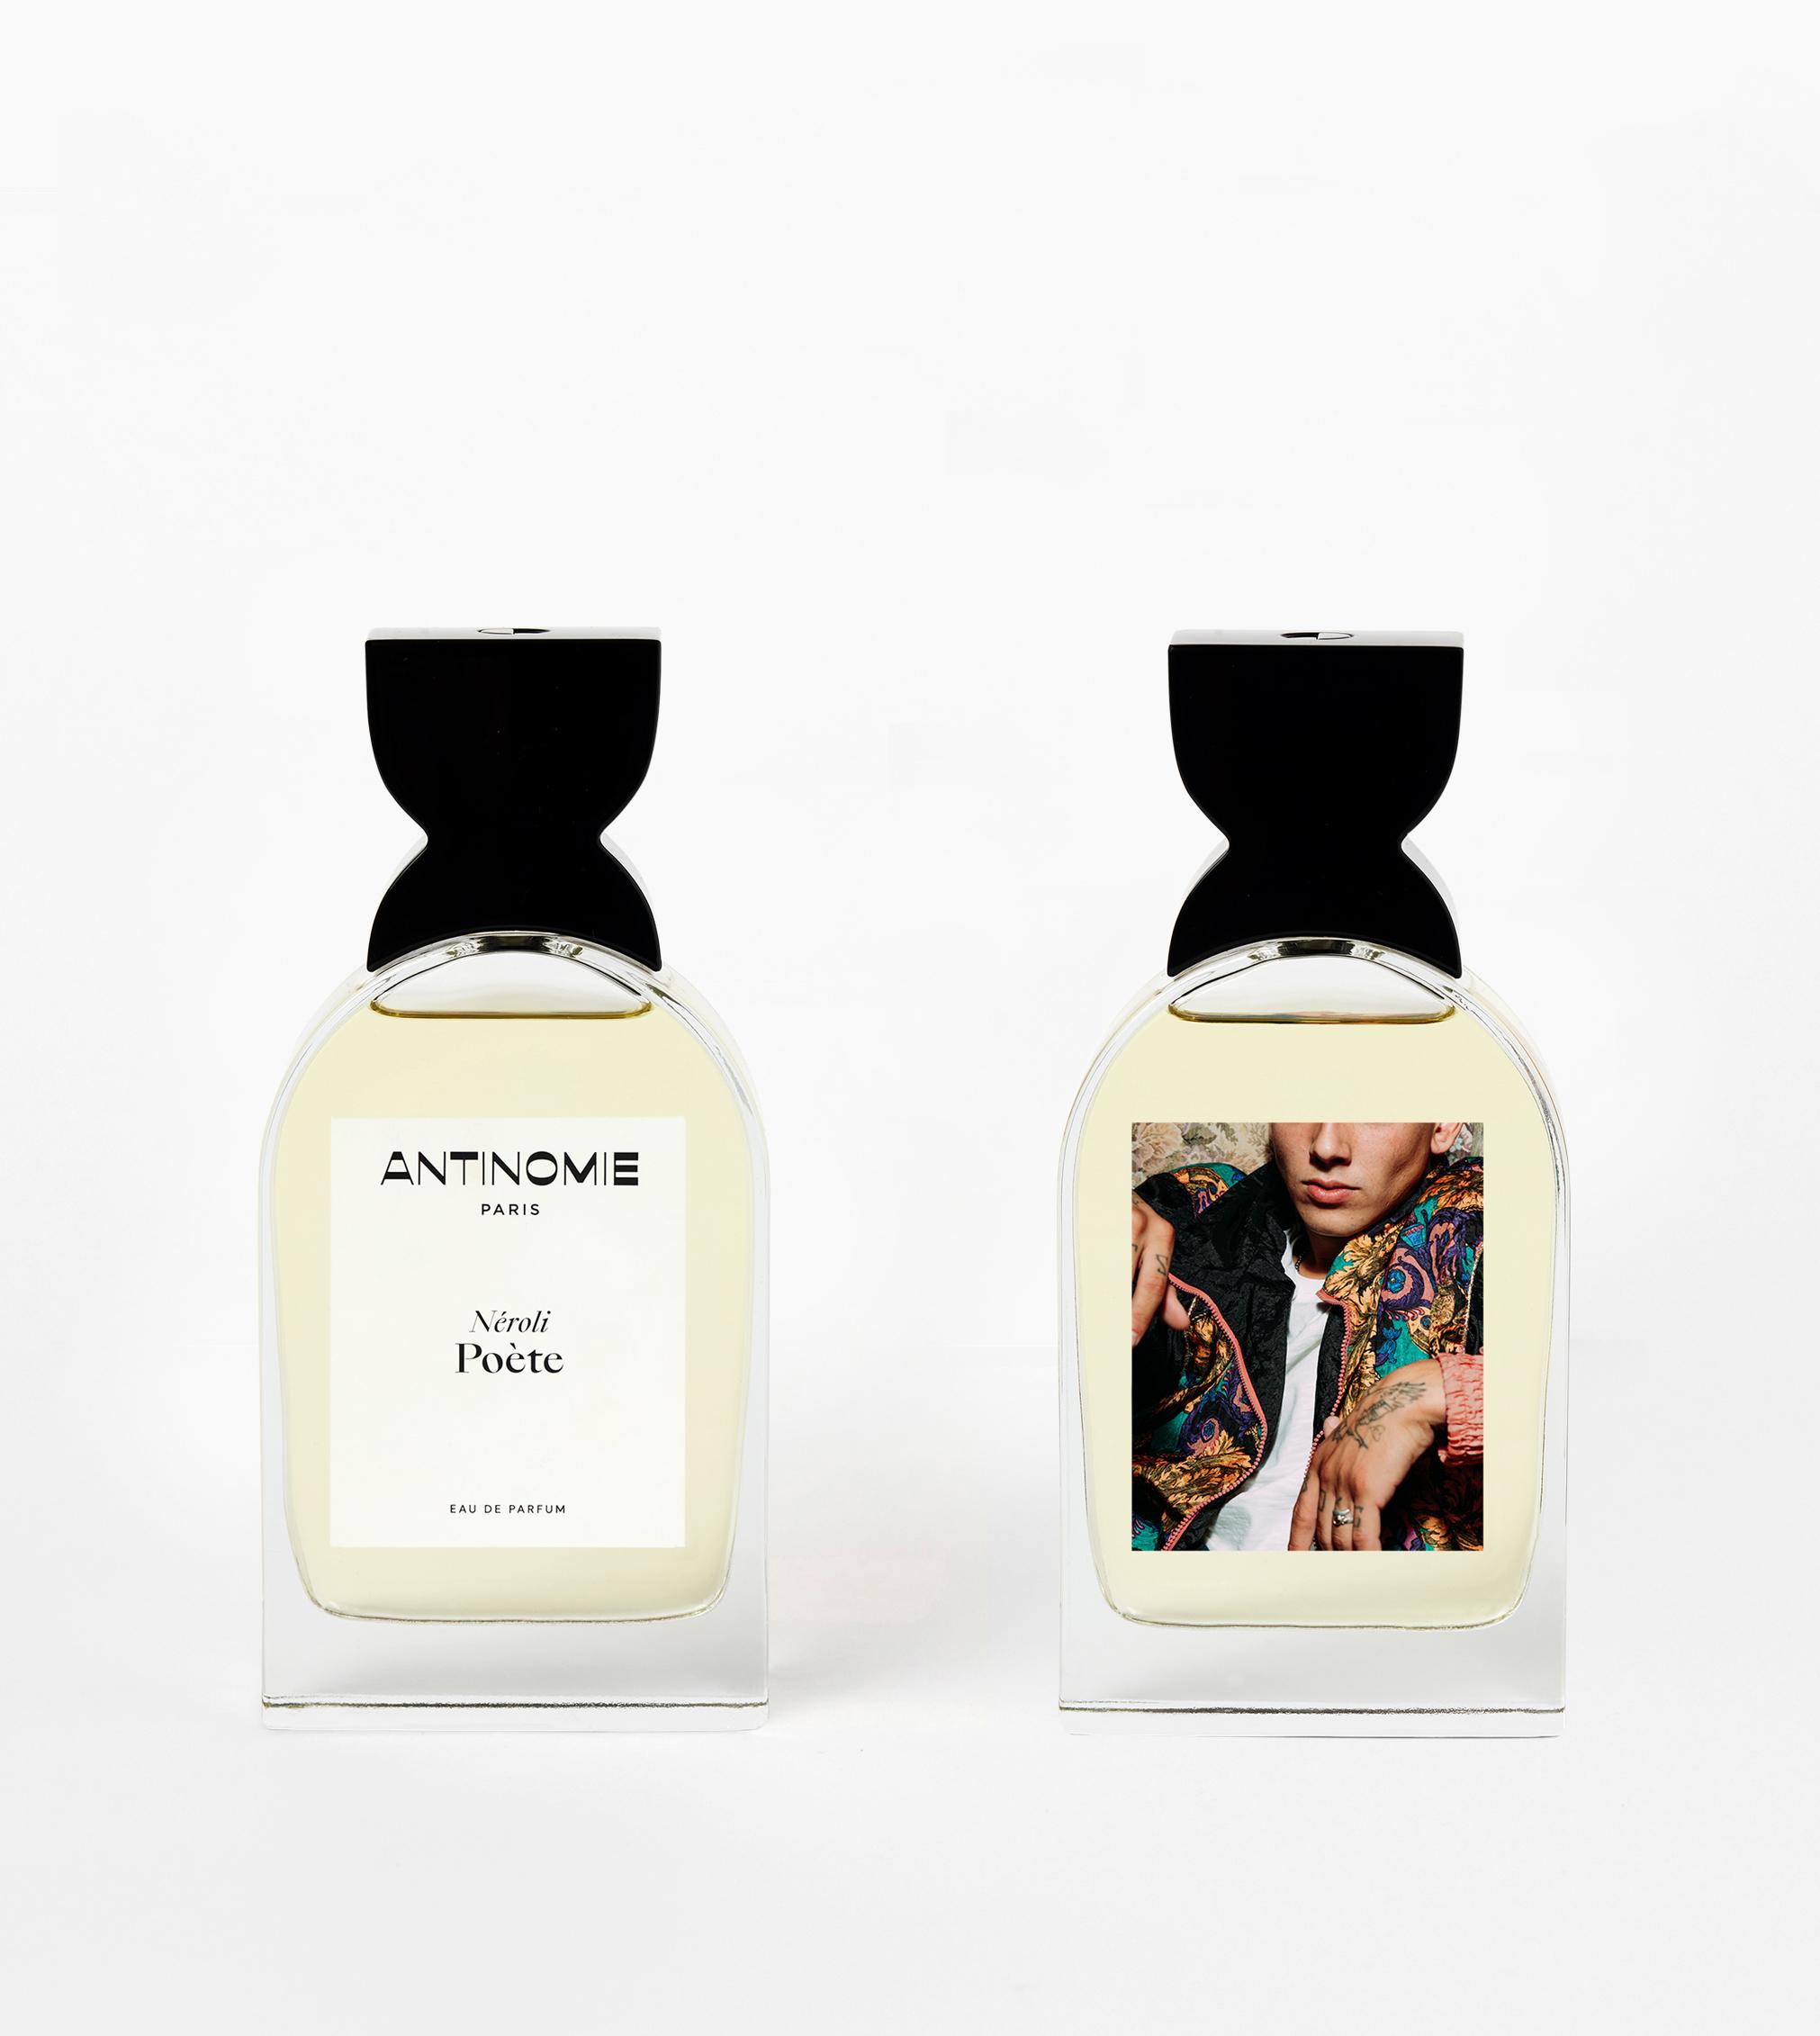 Deux Parfums hesperidia Antinomie Nérolie Poète